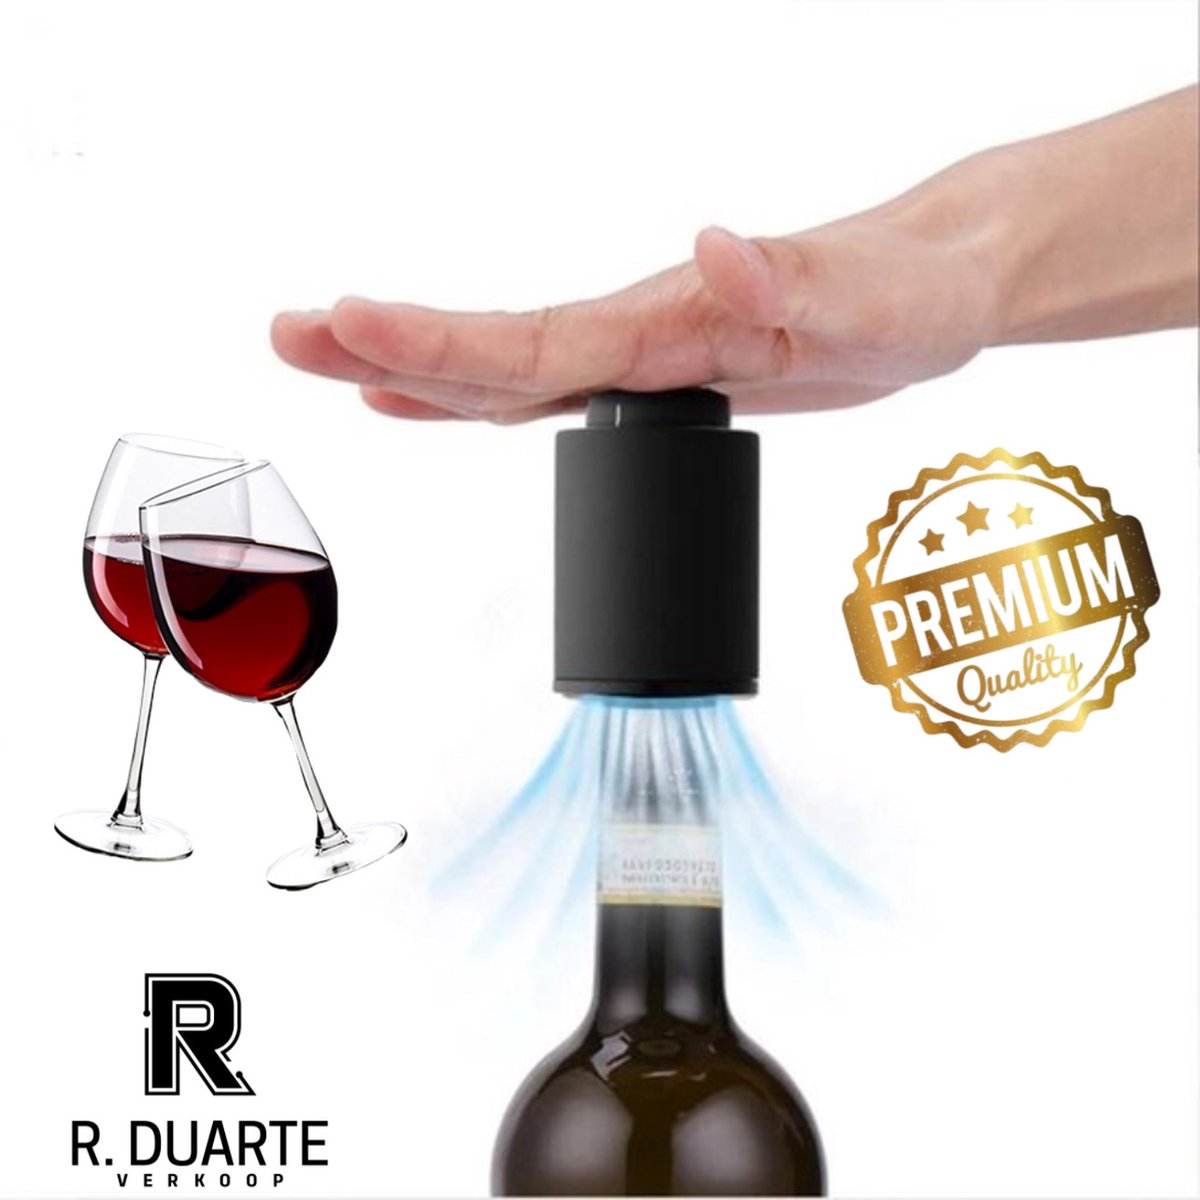 R. Duarte verkoop - Wijn Vacuümpomp - Wine Saver - Wijn Stopper- Vacuum Pomp - Wijnafsluiters - Wijnkurk - Wijn dop - Wijn pomp - Wijn - Zwart